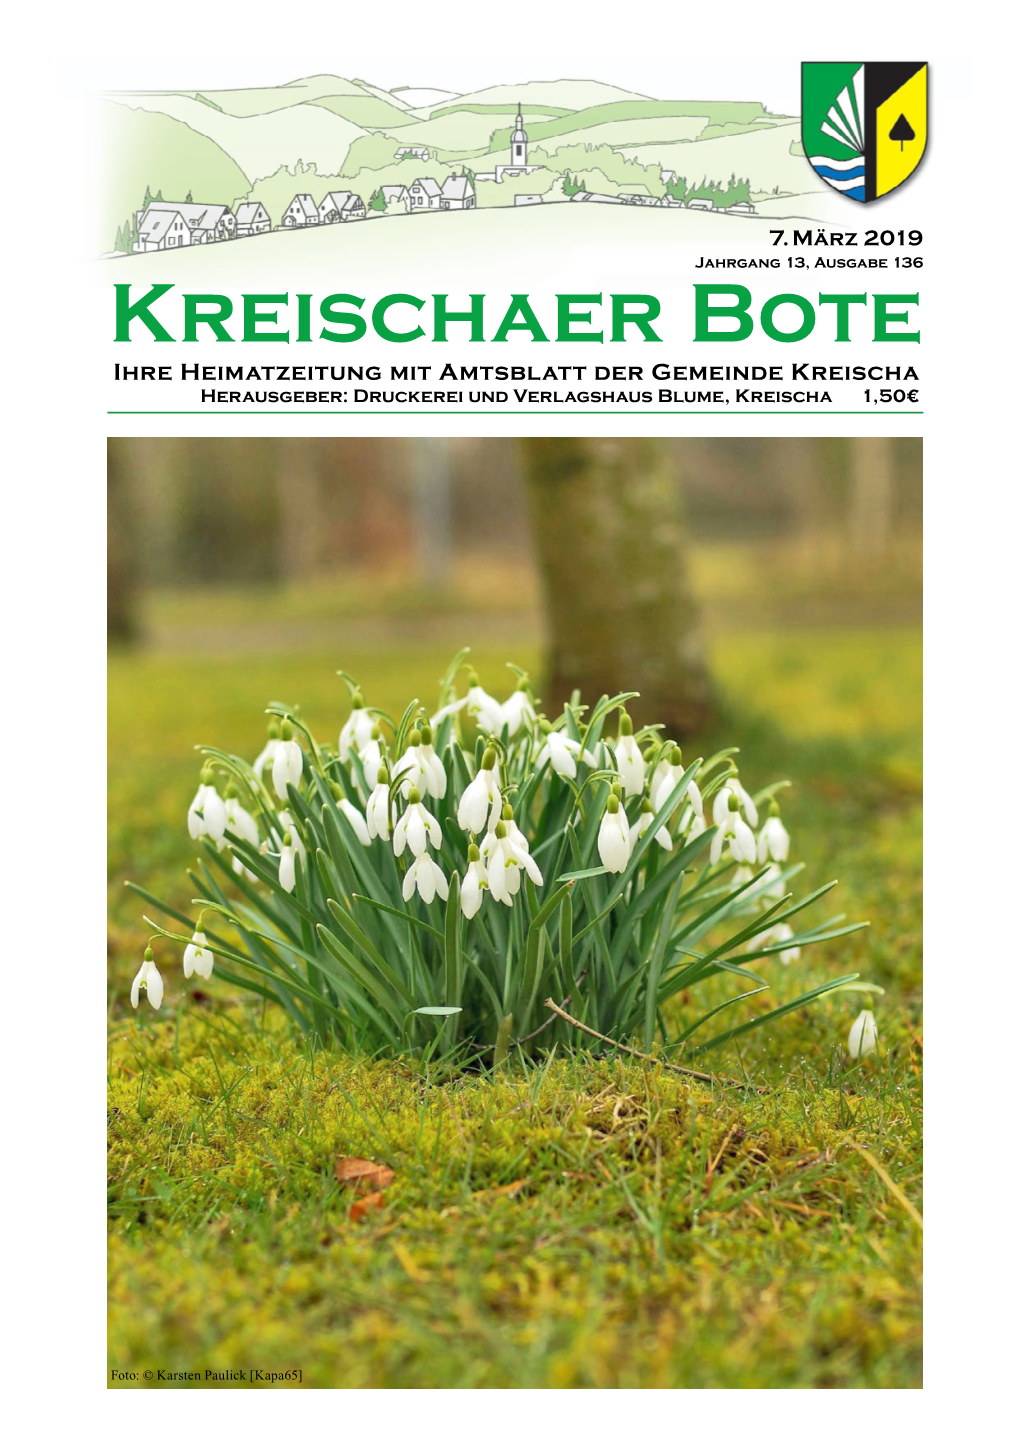 Kreischaer Bote Ihre Heimatzeitung Mit Amtsblatt Der Gemeinde Kreischa Herausgeber: Druckerei Und Verlagshaus Blume, Kreischa 1,50€